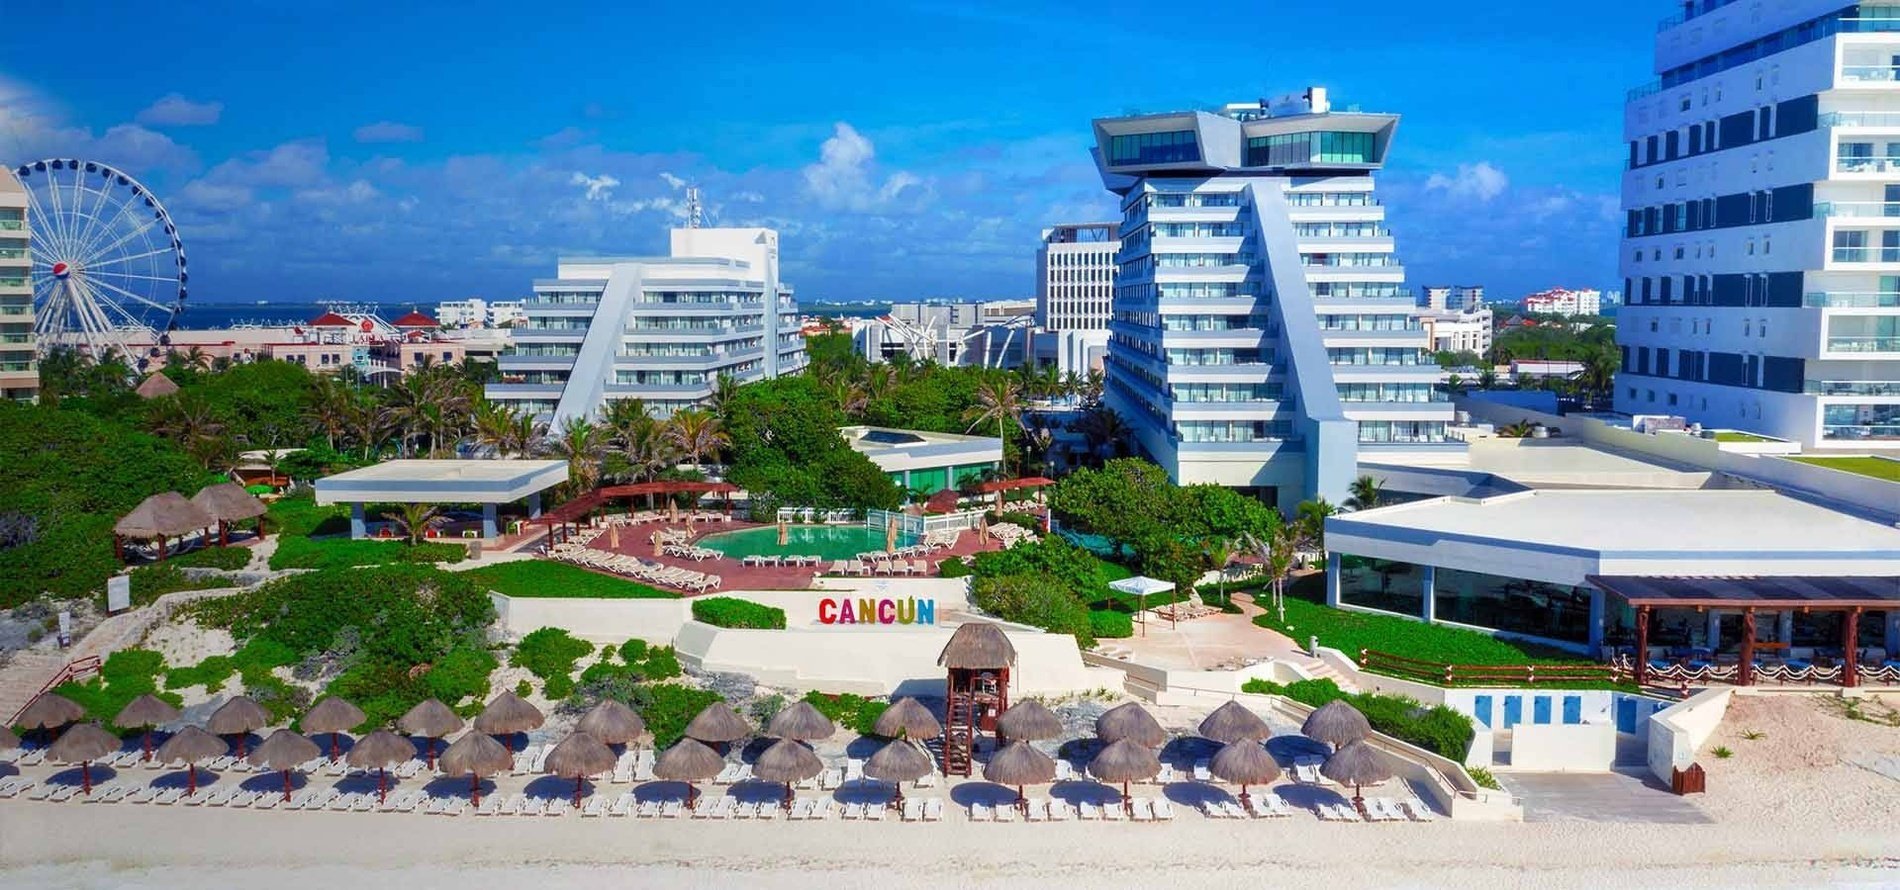 Visão geral das instalações do Park Royal Beach Cancun Hotel no Caribe mexicano